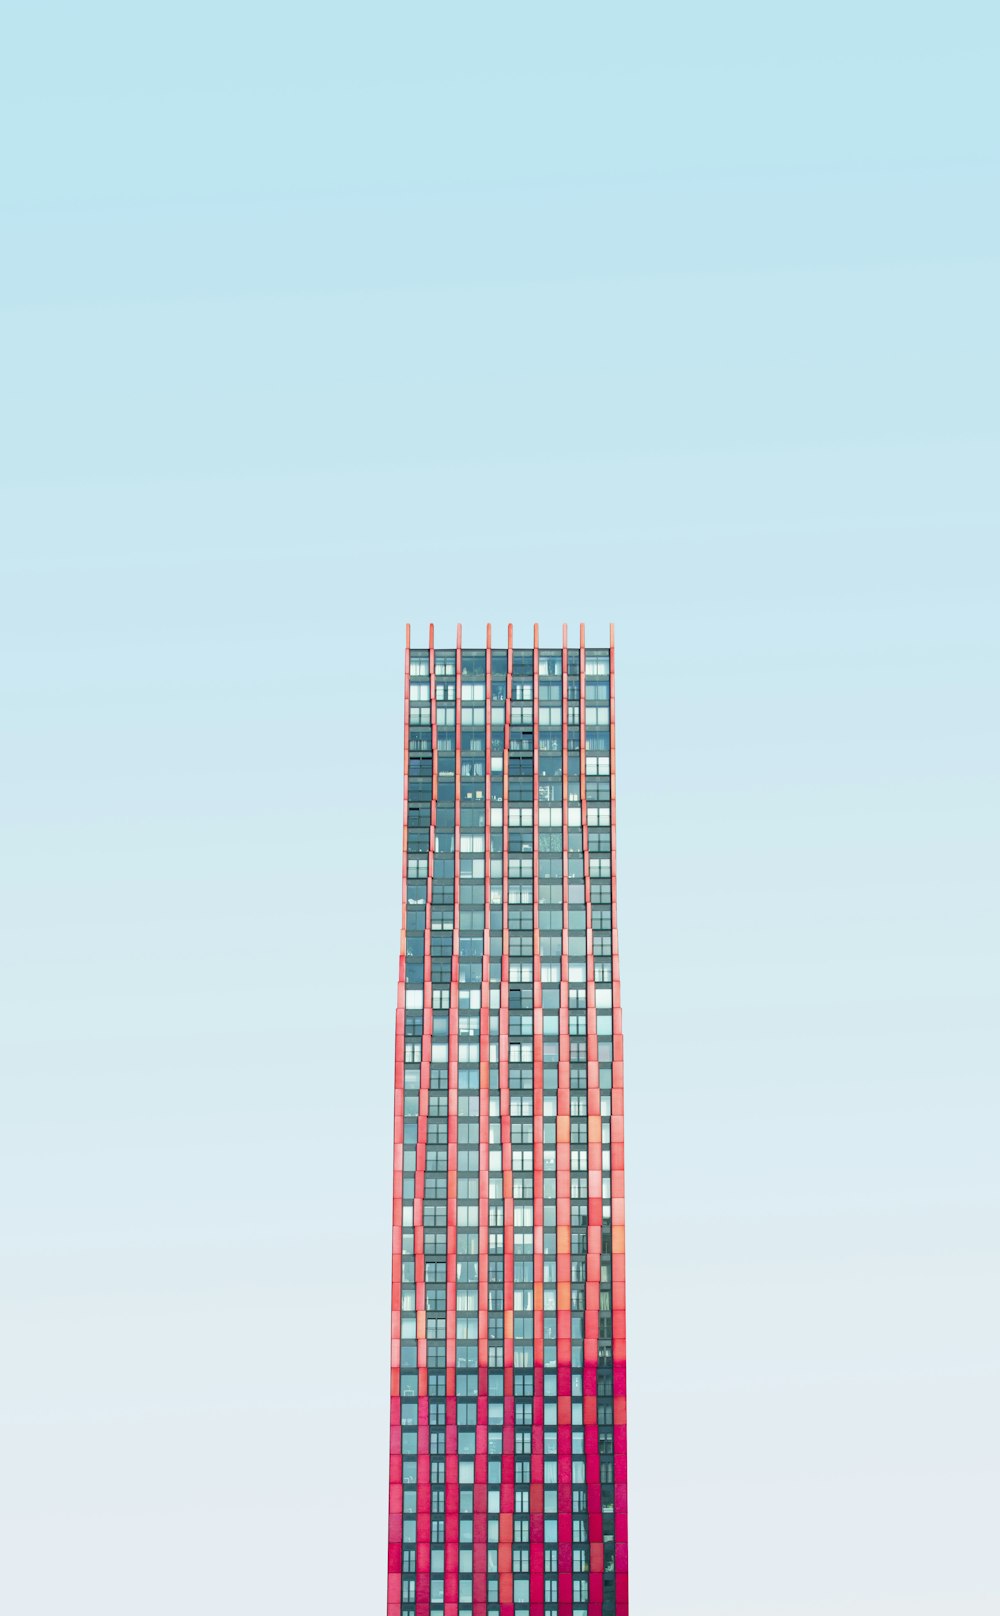 Edificio de gran altura bajo cielos azules durante el día